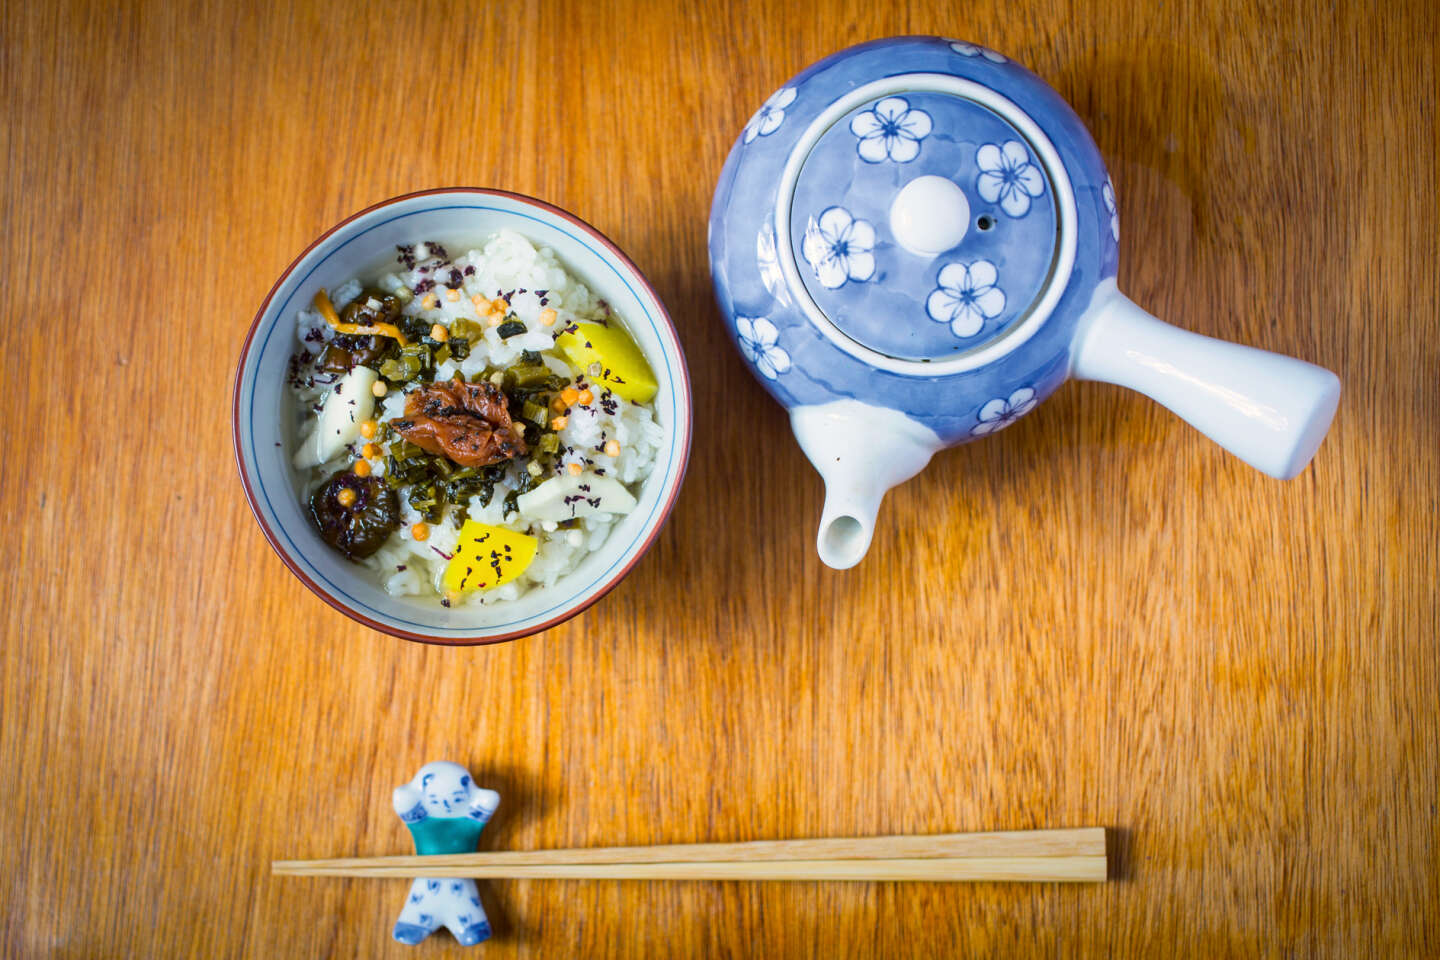 Recettes japonaises - Cuisine du monde - Elle à Table